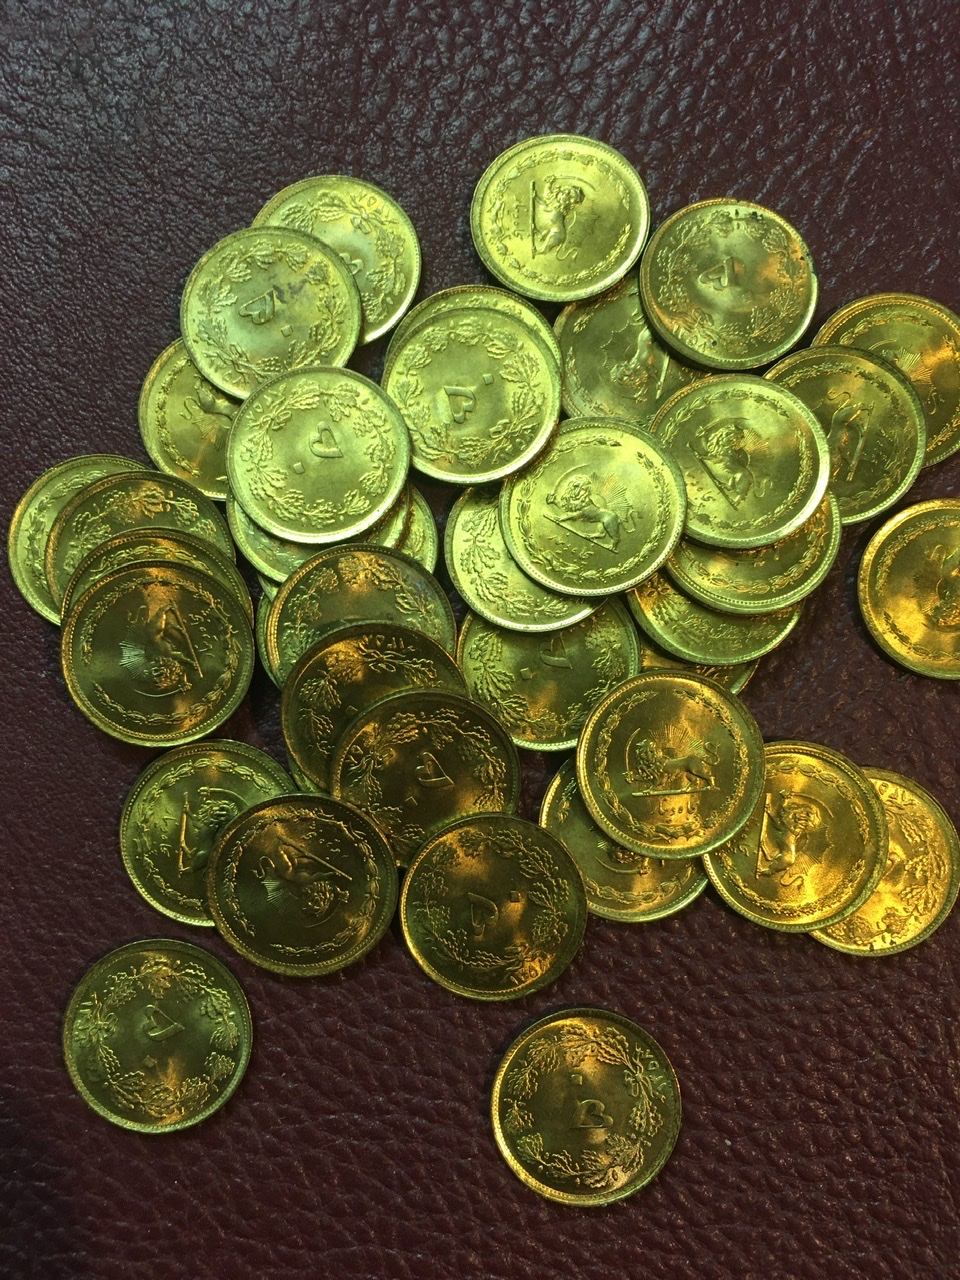 ٣٠ قطعه سکه ۵٠ دیناری سوپر بانکی ١٣۵٨